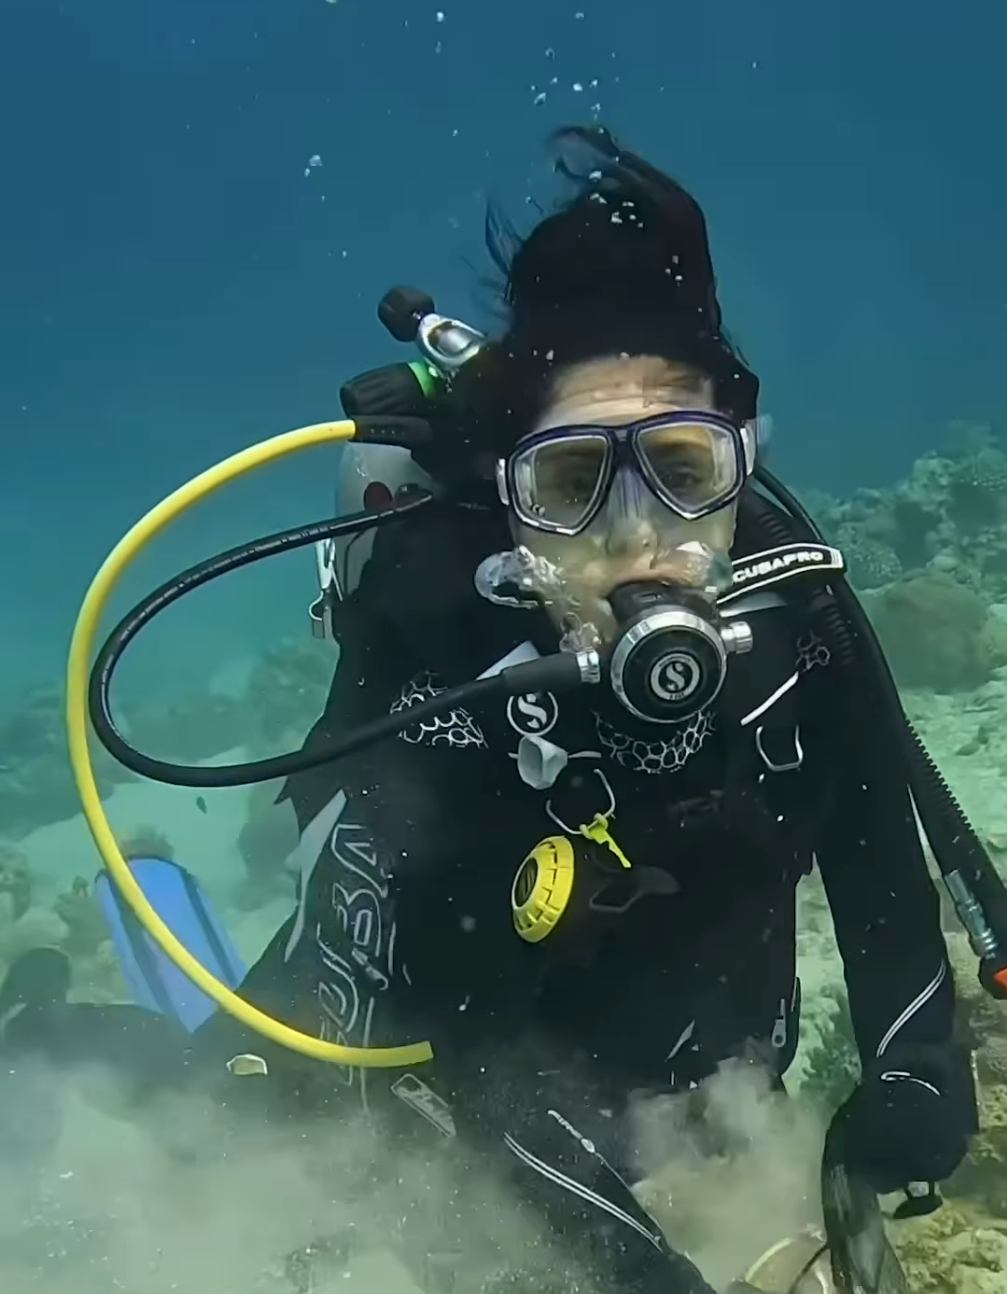 Salma Hayek Helps Clean Up Jordan’s Coral Reefs